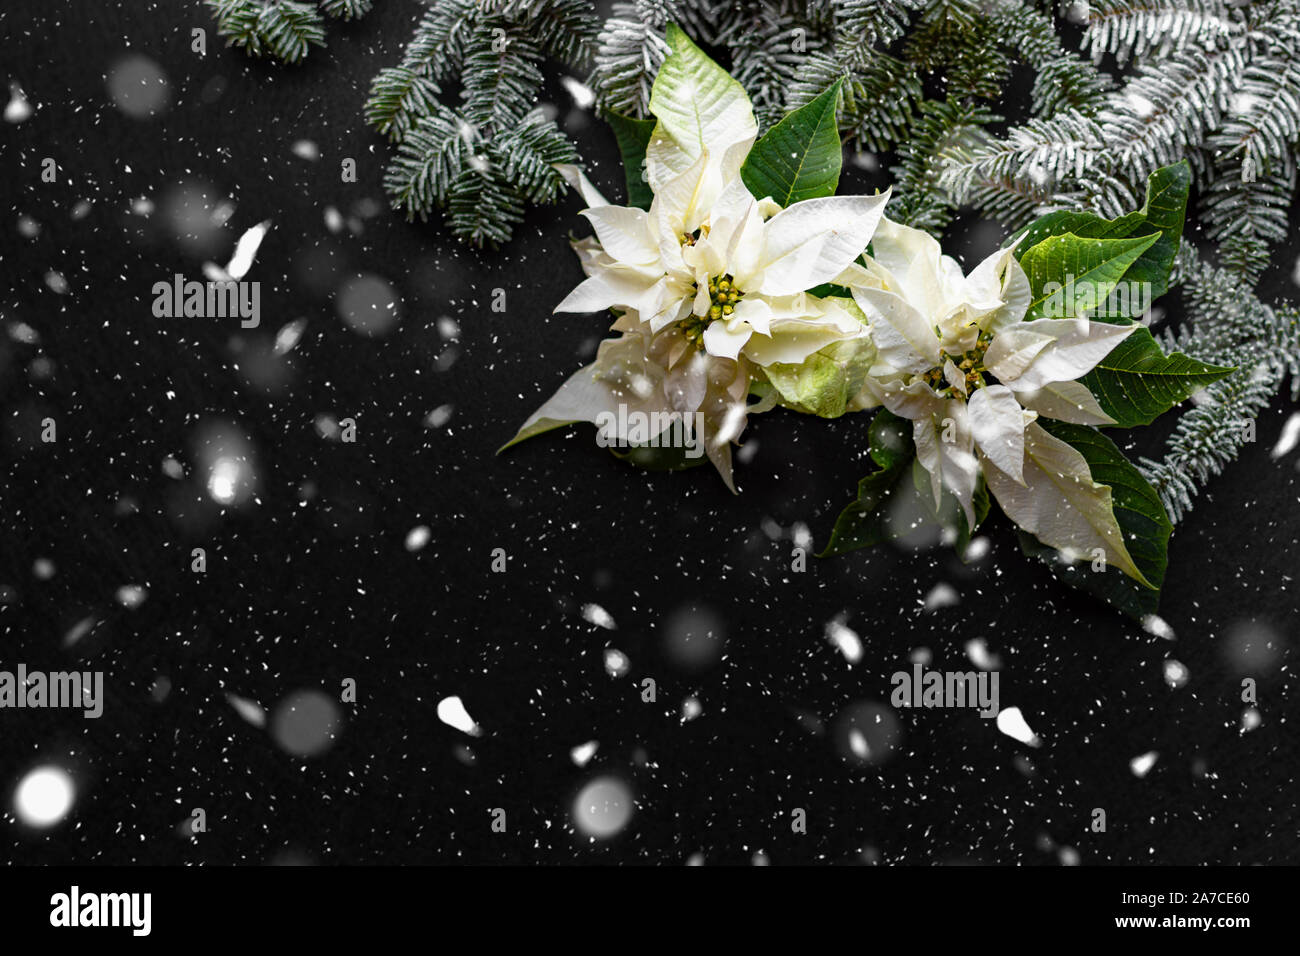 Poinsettia fleur avec sapin et la neige sur fond sombre. Bonjour Carte de Noël. Carte postale. L'approche de Noël. Rouge, blanc et vert. L'espace libre. Banque D'Images